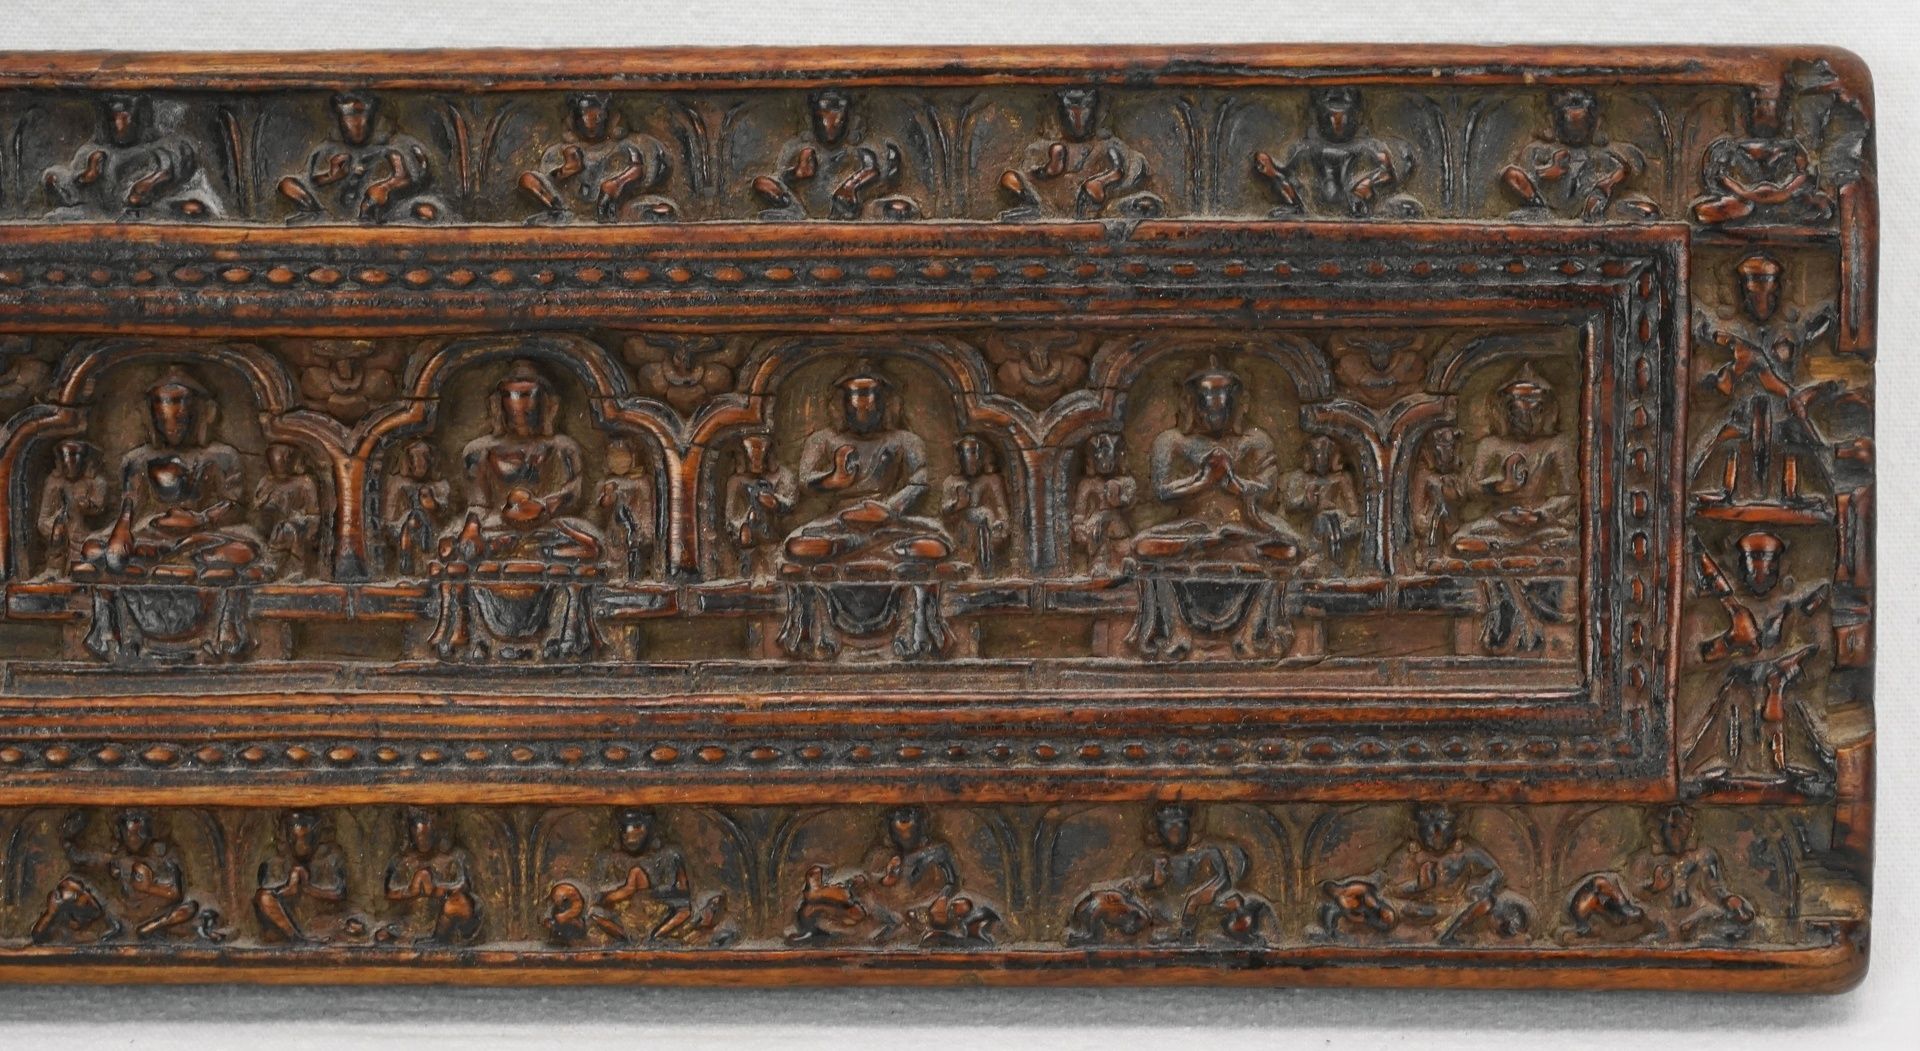 Kleiner tibetischer Buddha Buchdeckel / Sutra-Deckel, 18./19. Jh.Holz, fein geschnitzter Buchdeckel, - Bild 3 aus 8